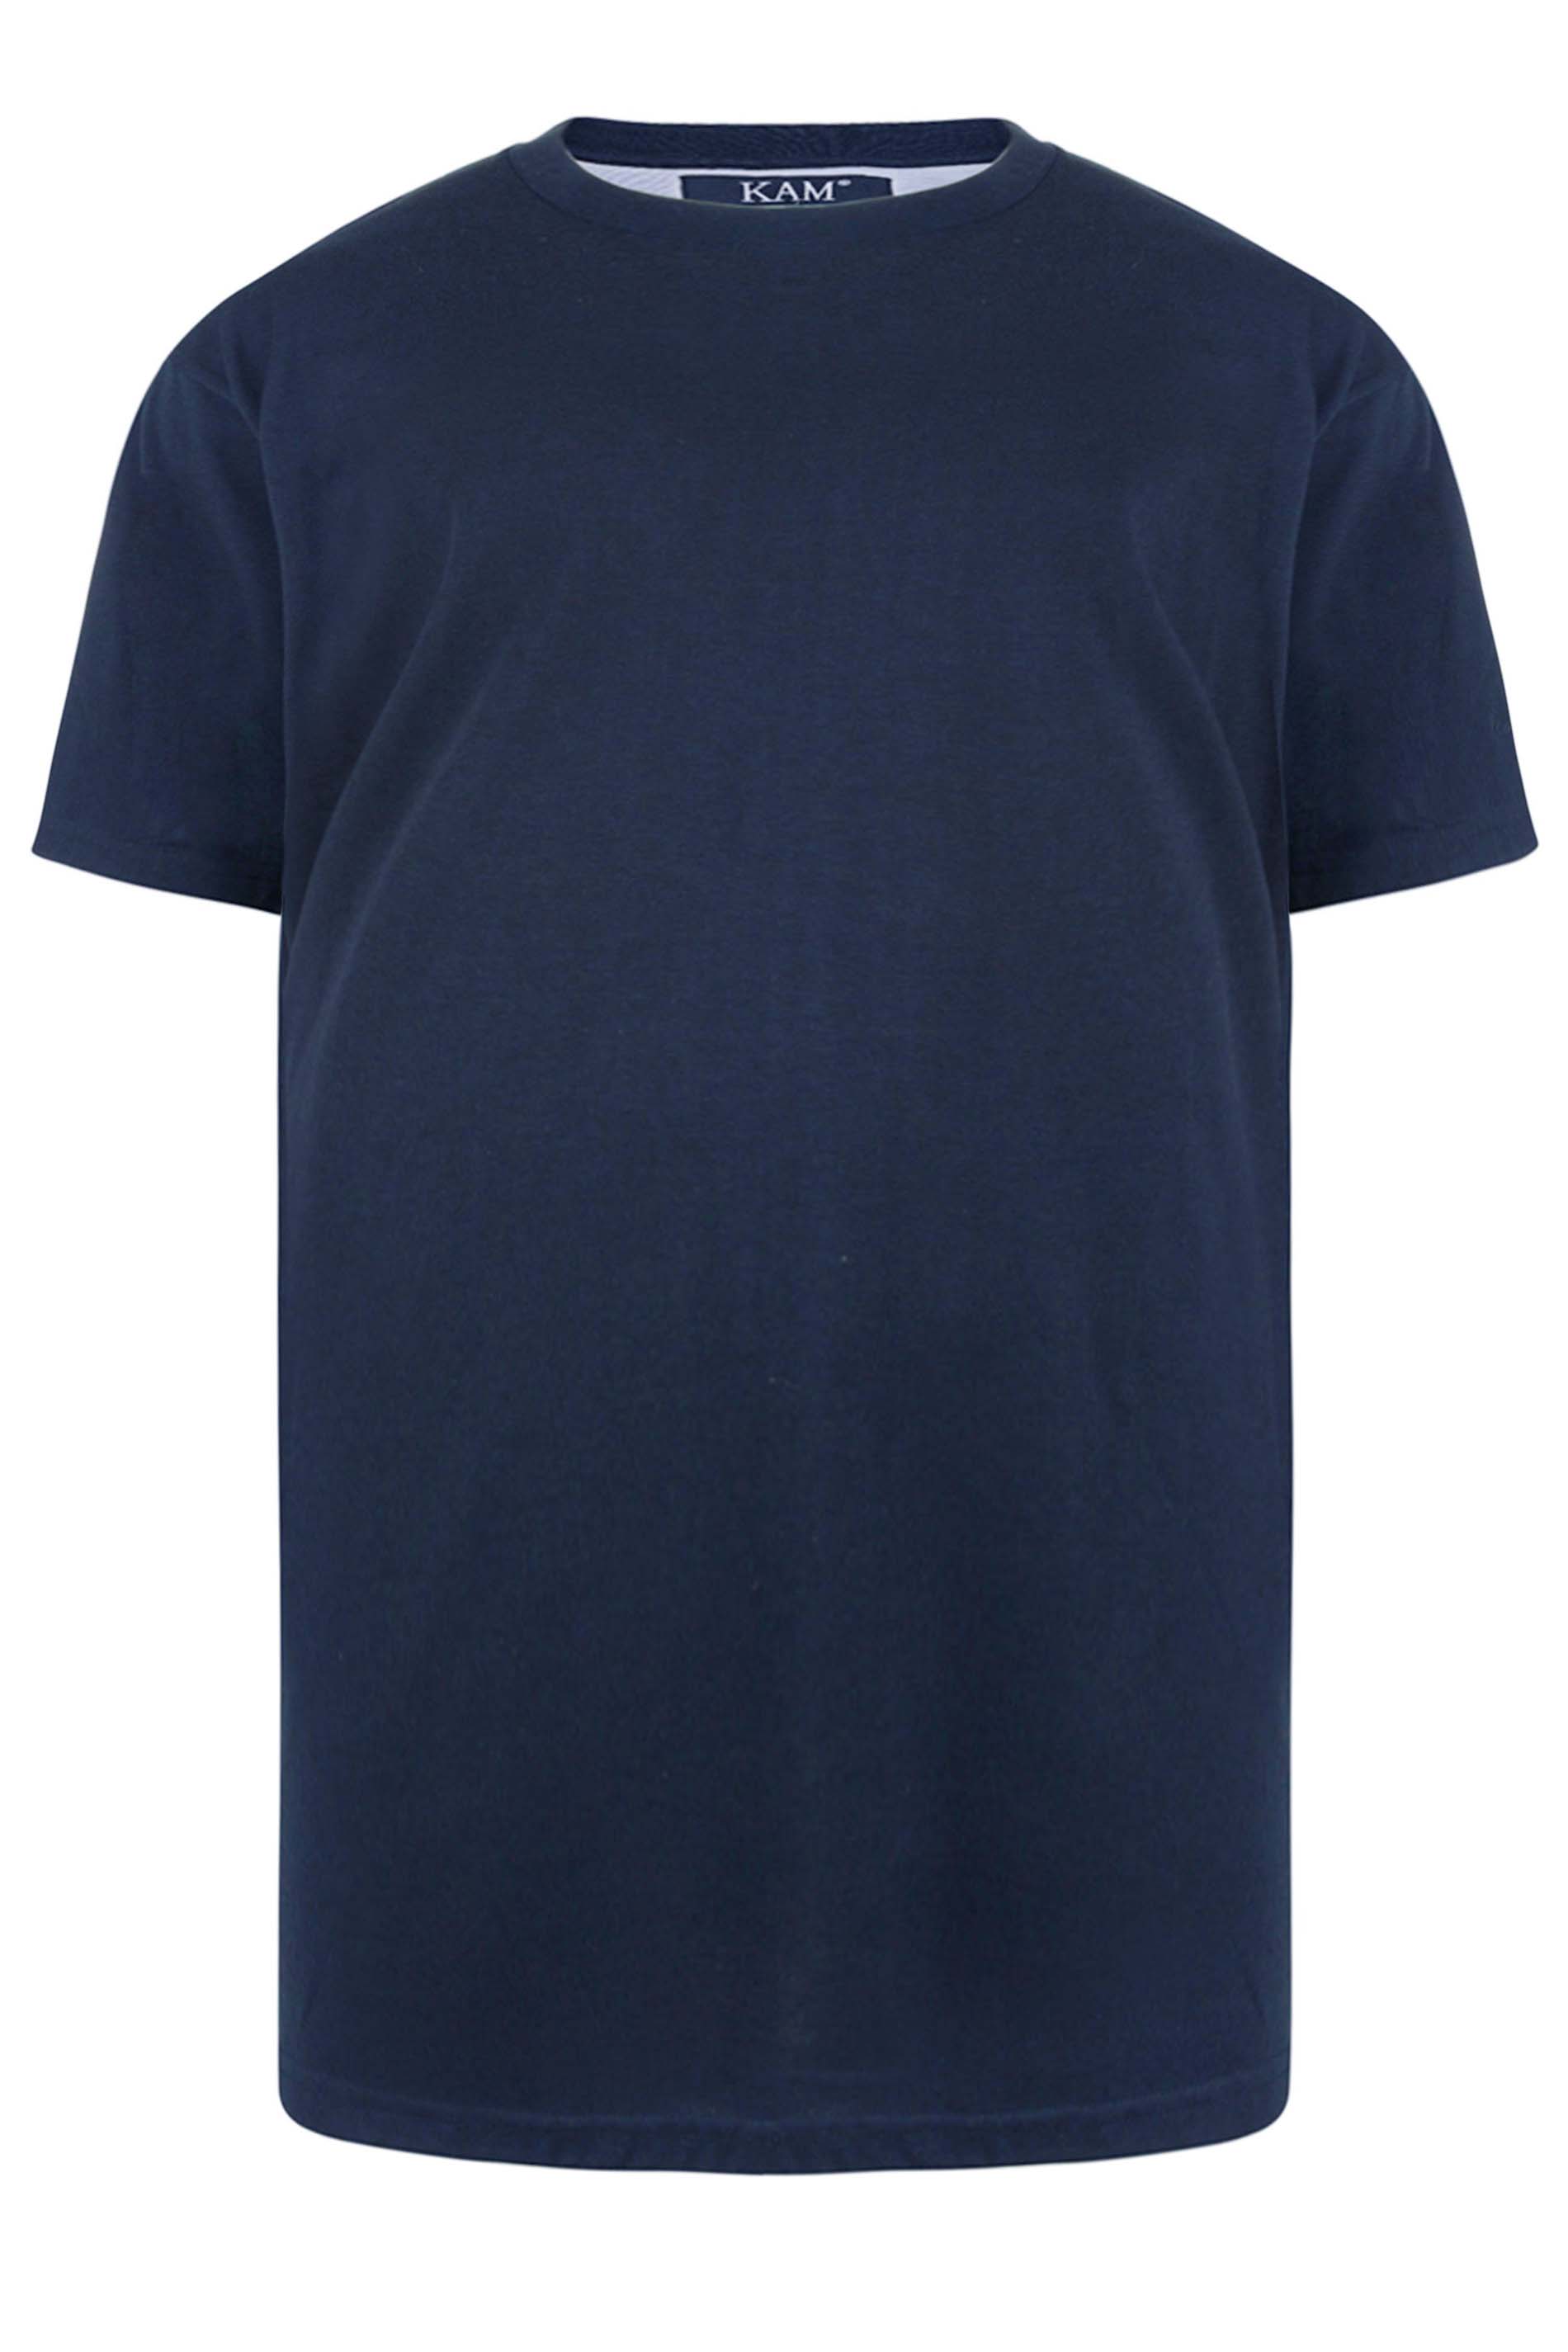 KAM Navy Blue Plain T-Shirt | BadRhino 2